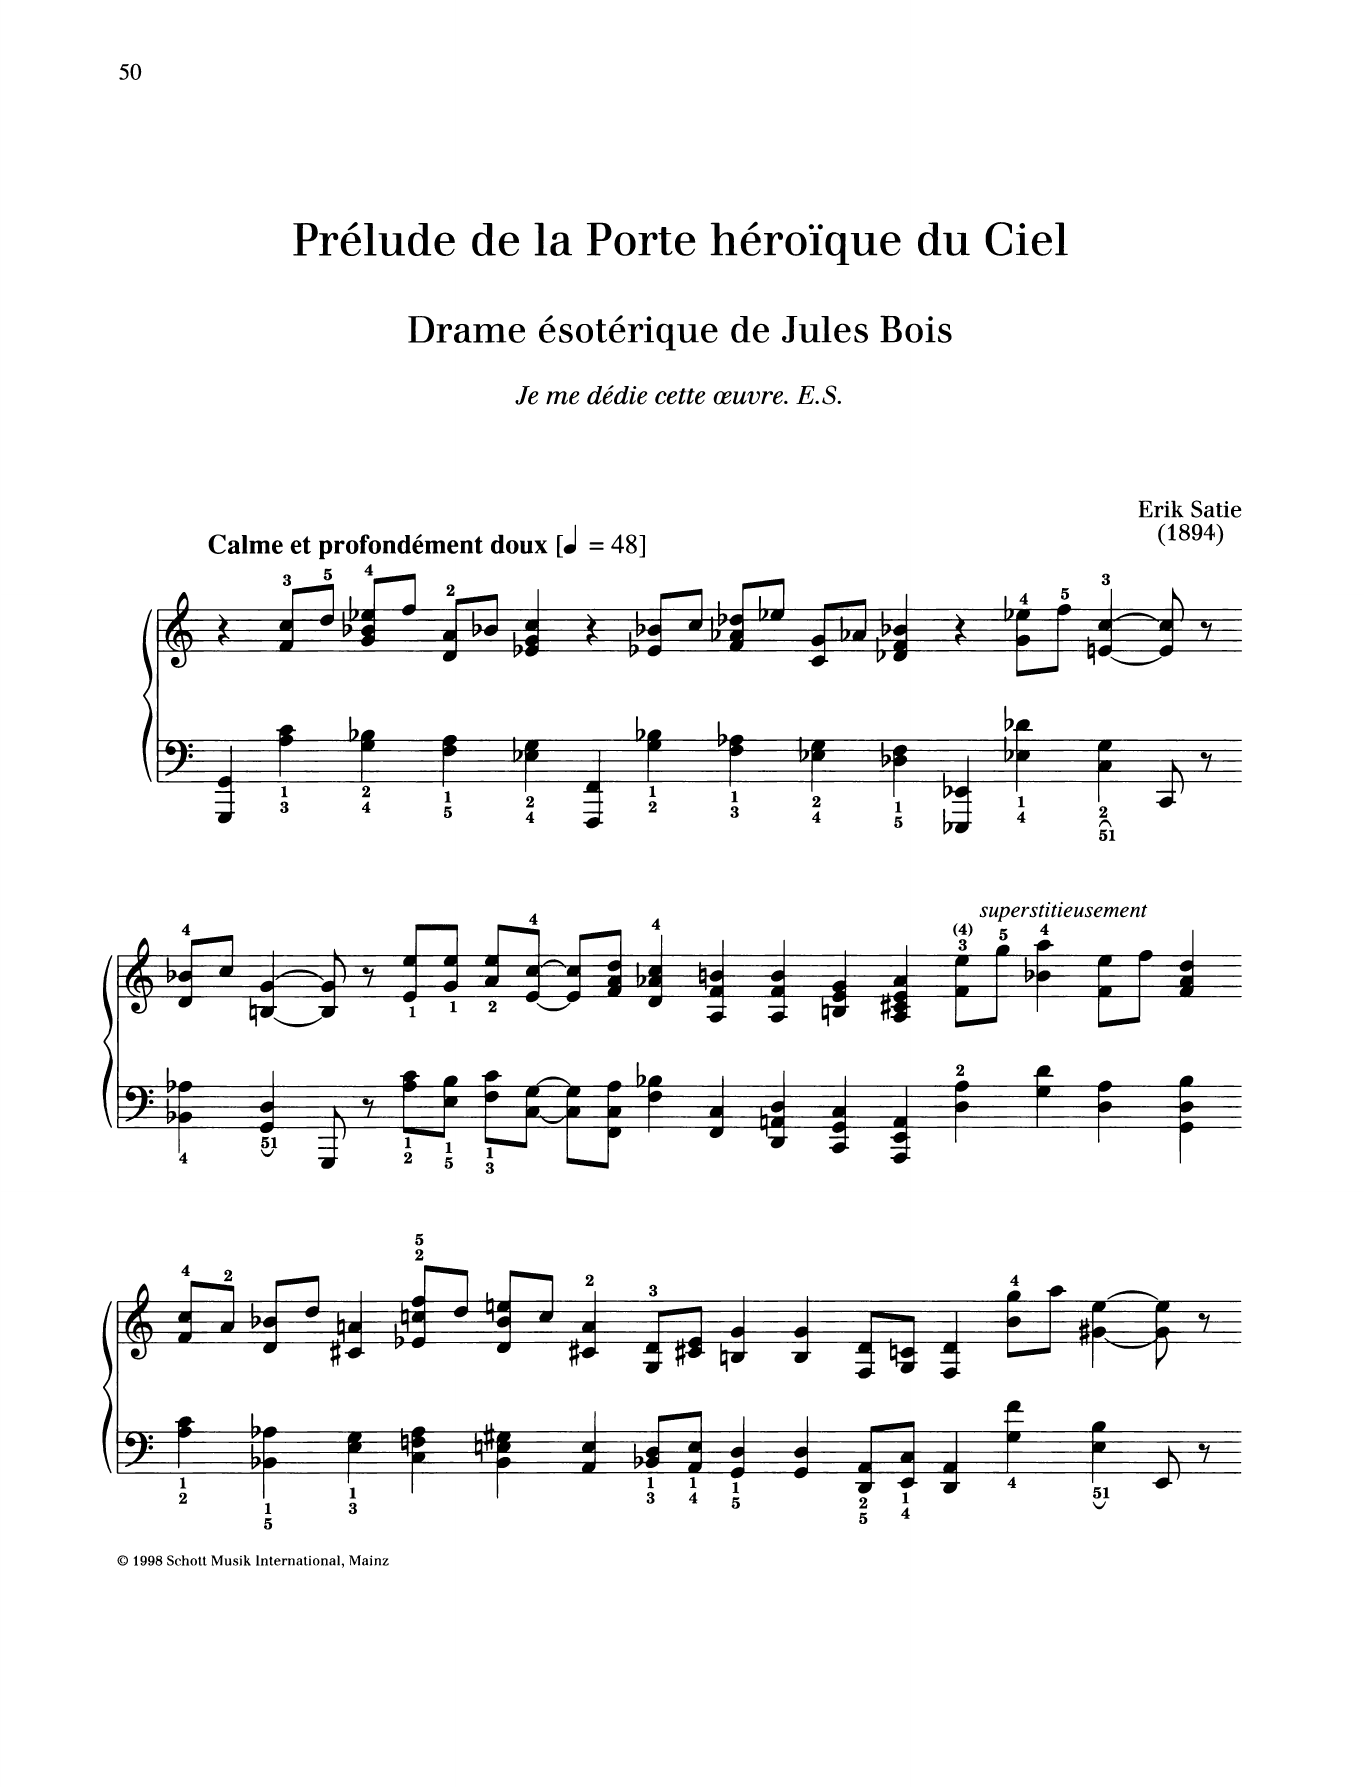 Erik Satie Prelude de la Porte heroique du Ciel sheet music notes and chords arranged for Piano Solo